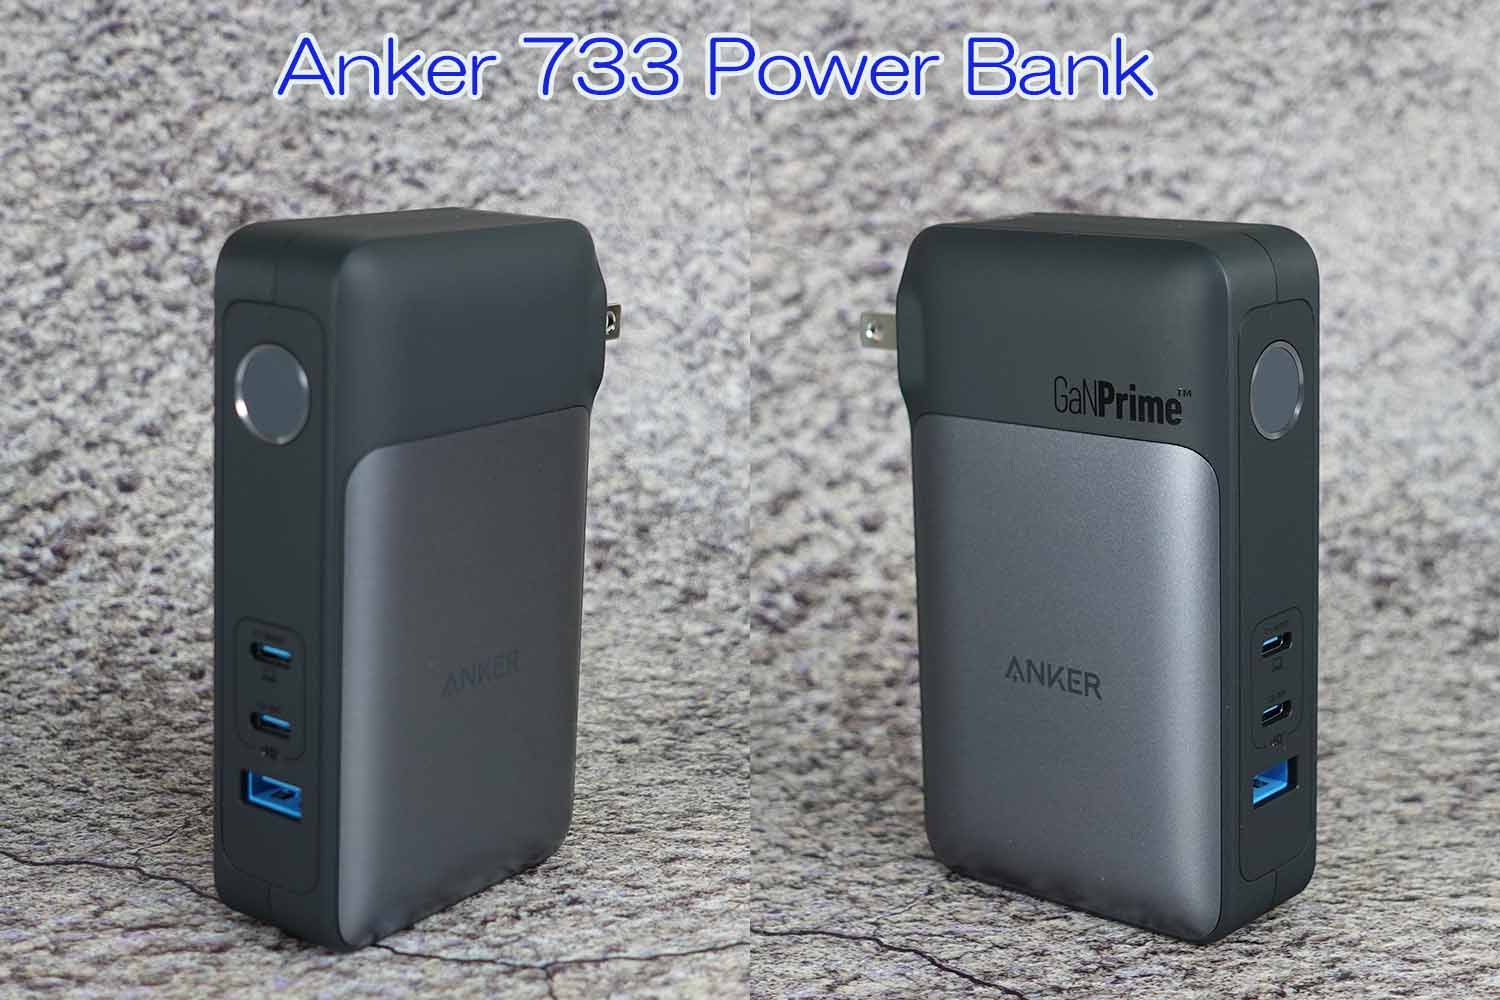 GaNPrime】Anker 733 Power Bankのレビュー